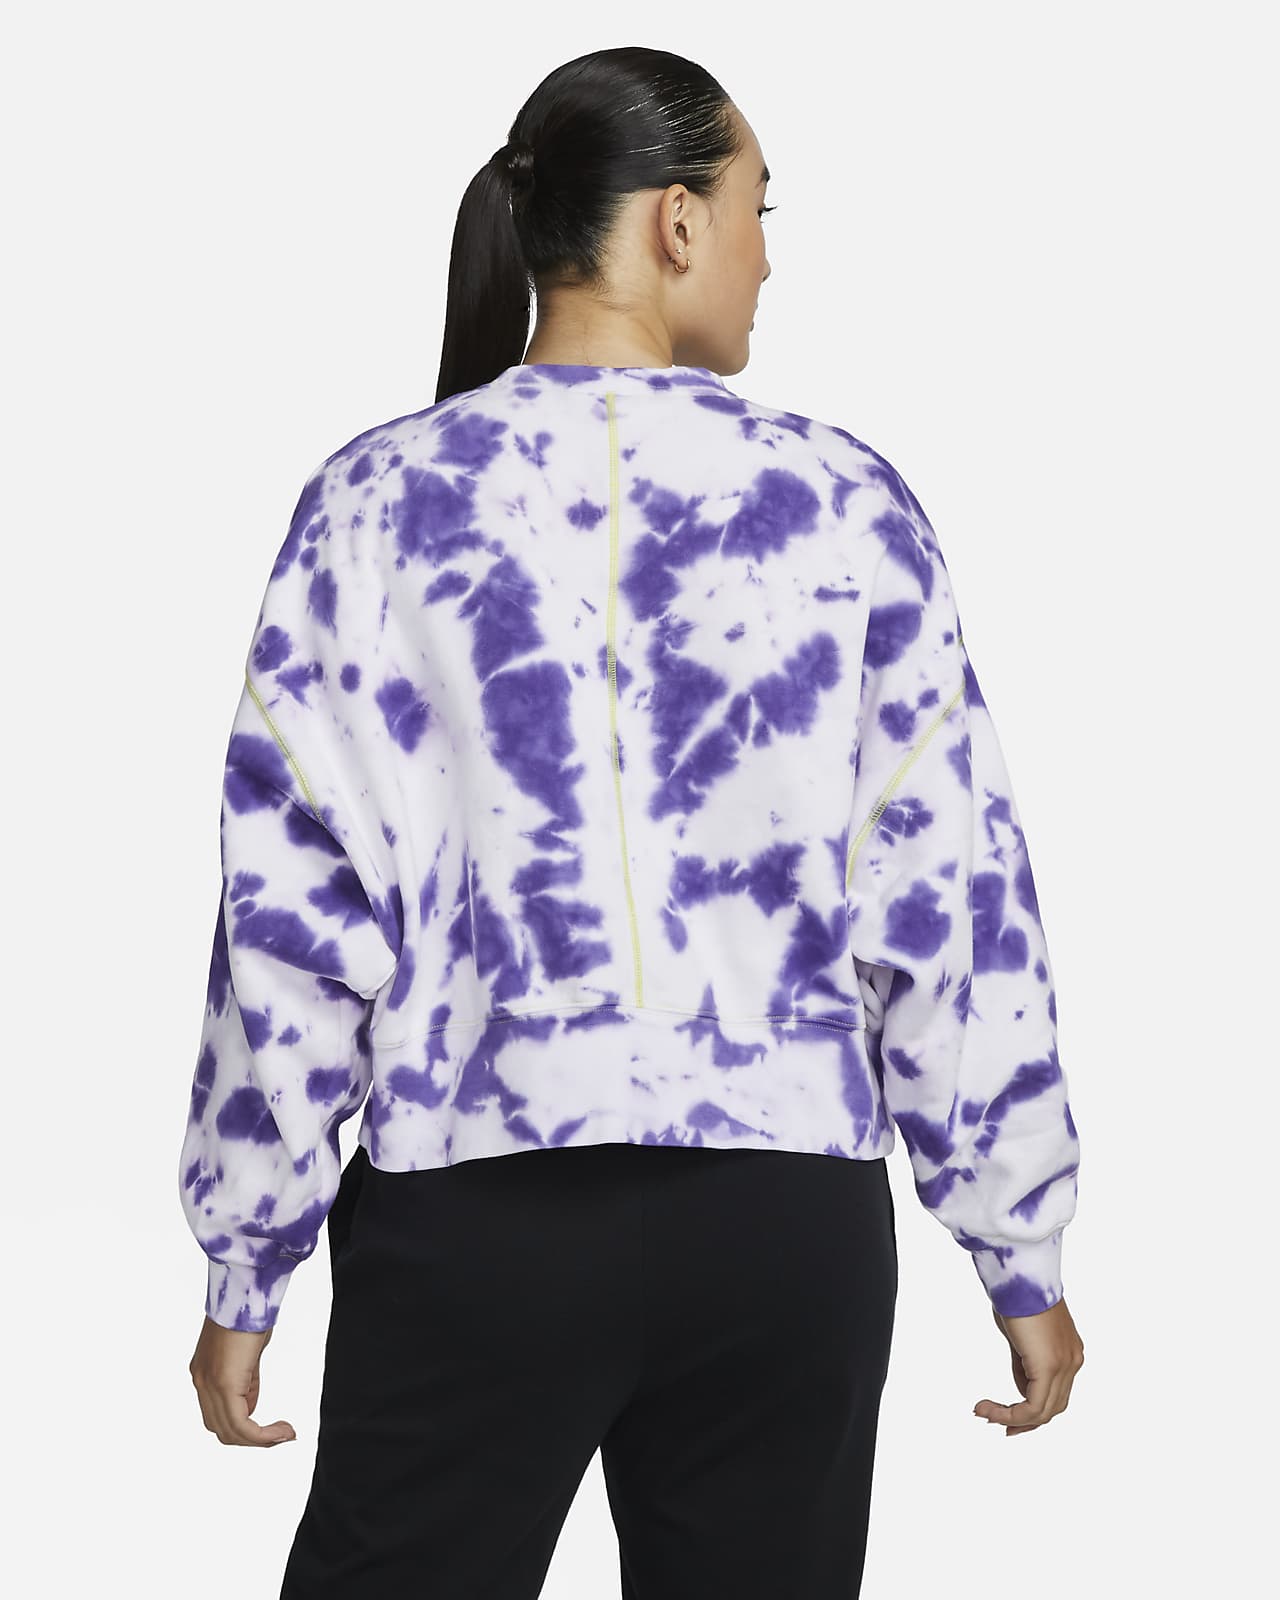 Nike Sportswear Women's Oversized Fleece Tie-Dye Crew Sweatshirt